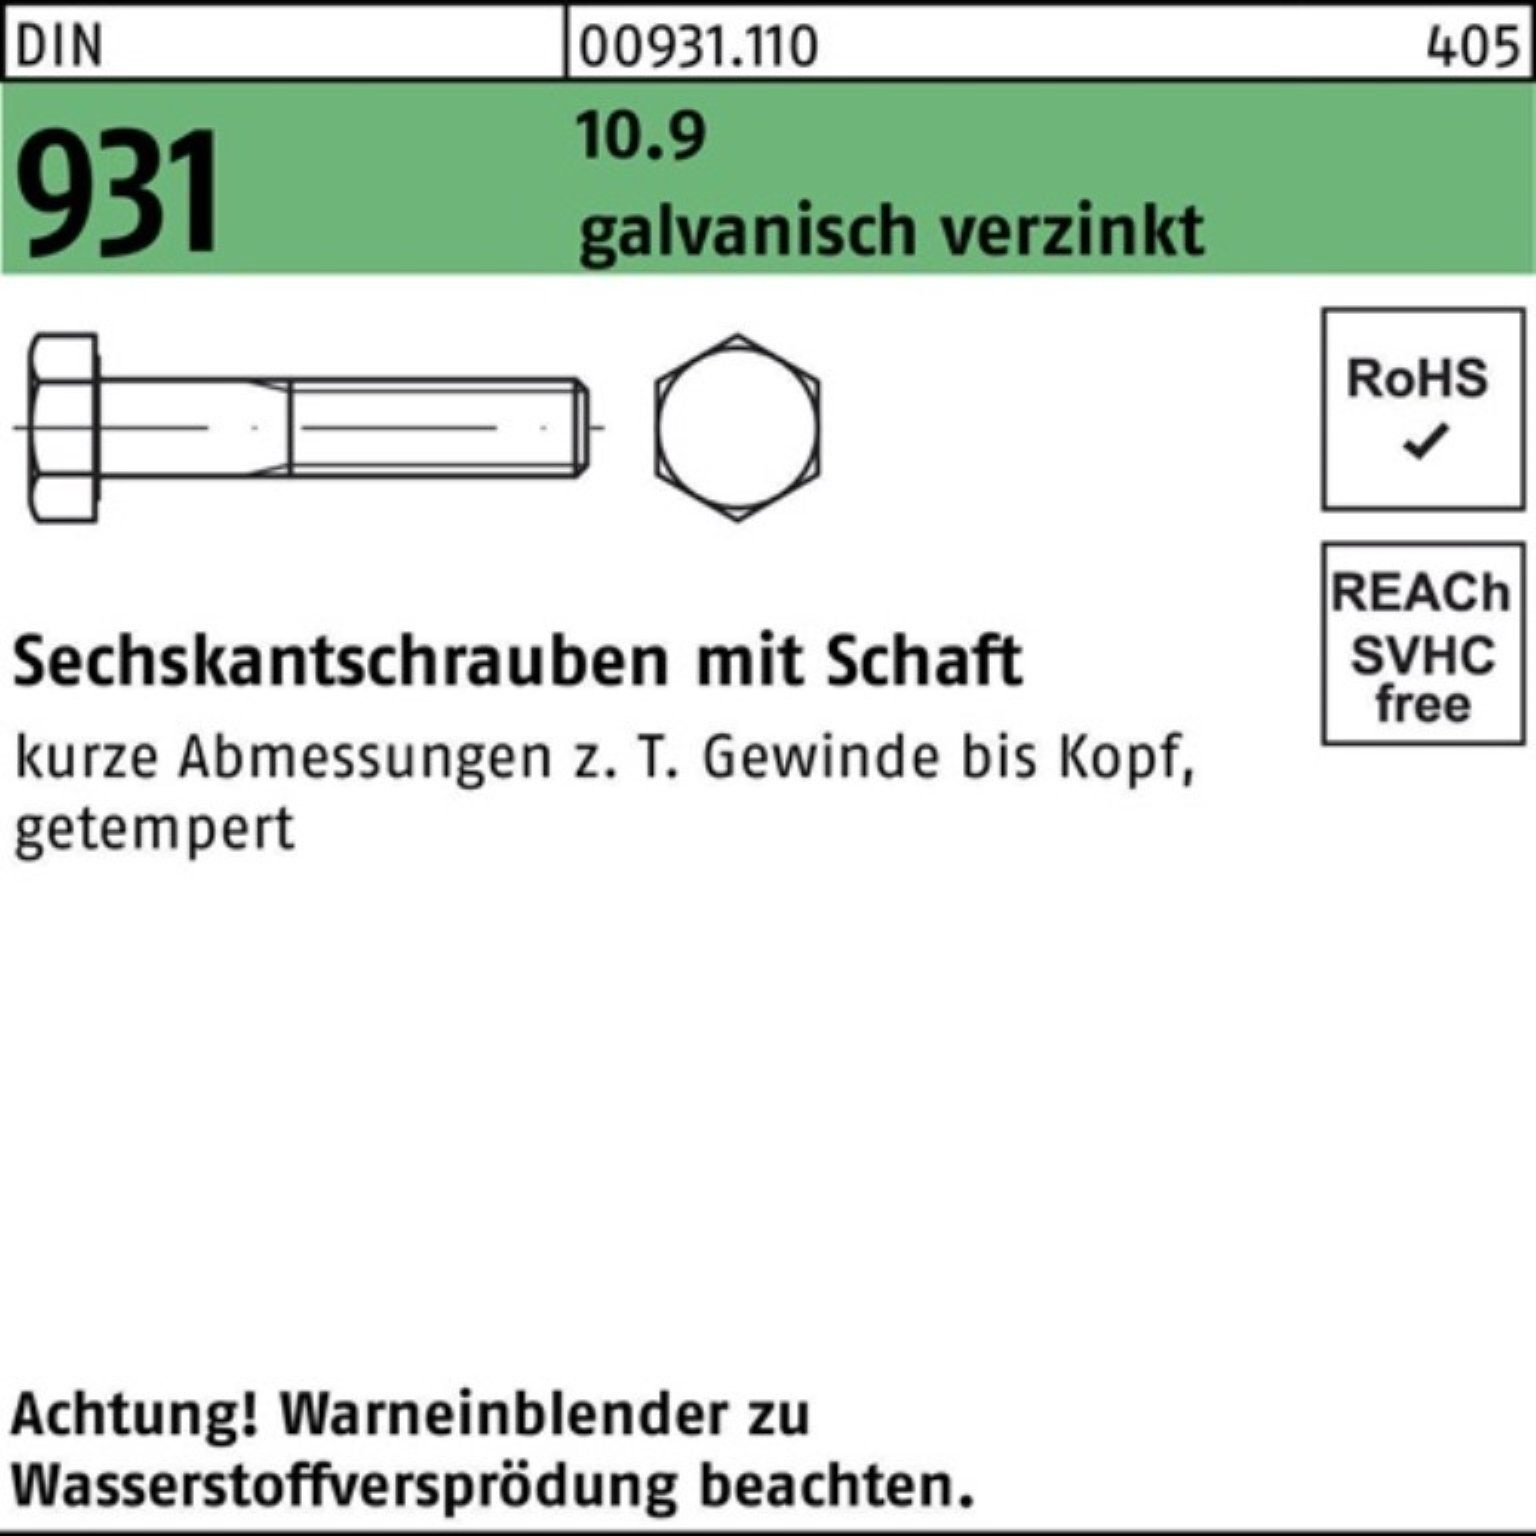 Sechskantschraube Reyher Schaft Pack 10.9 M10x DIN 10 80 100er 931 Sechskantschraube galv.verz.